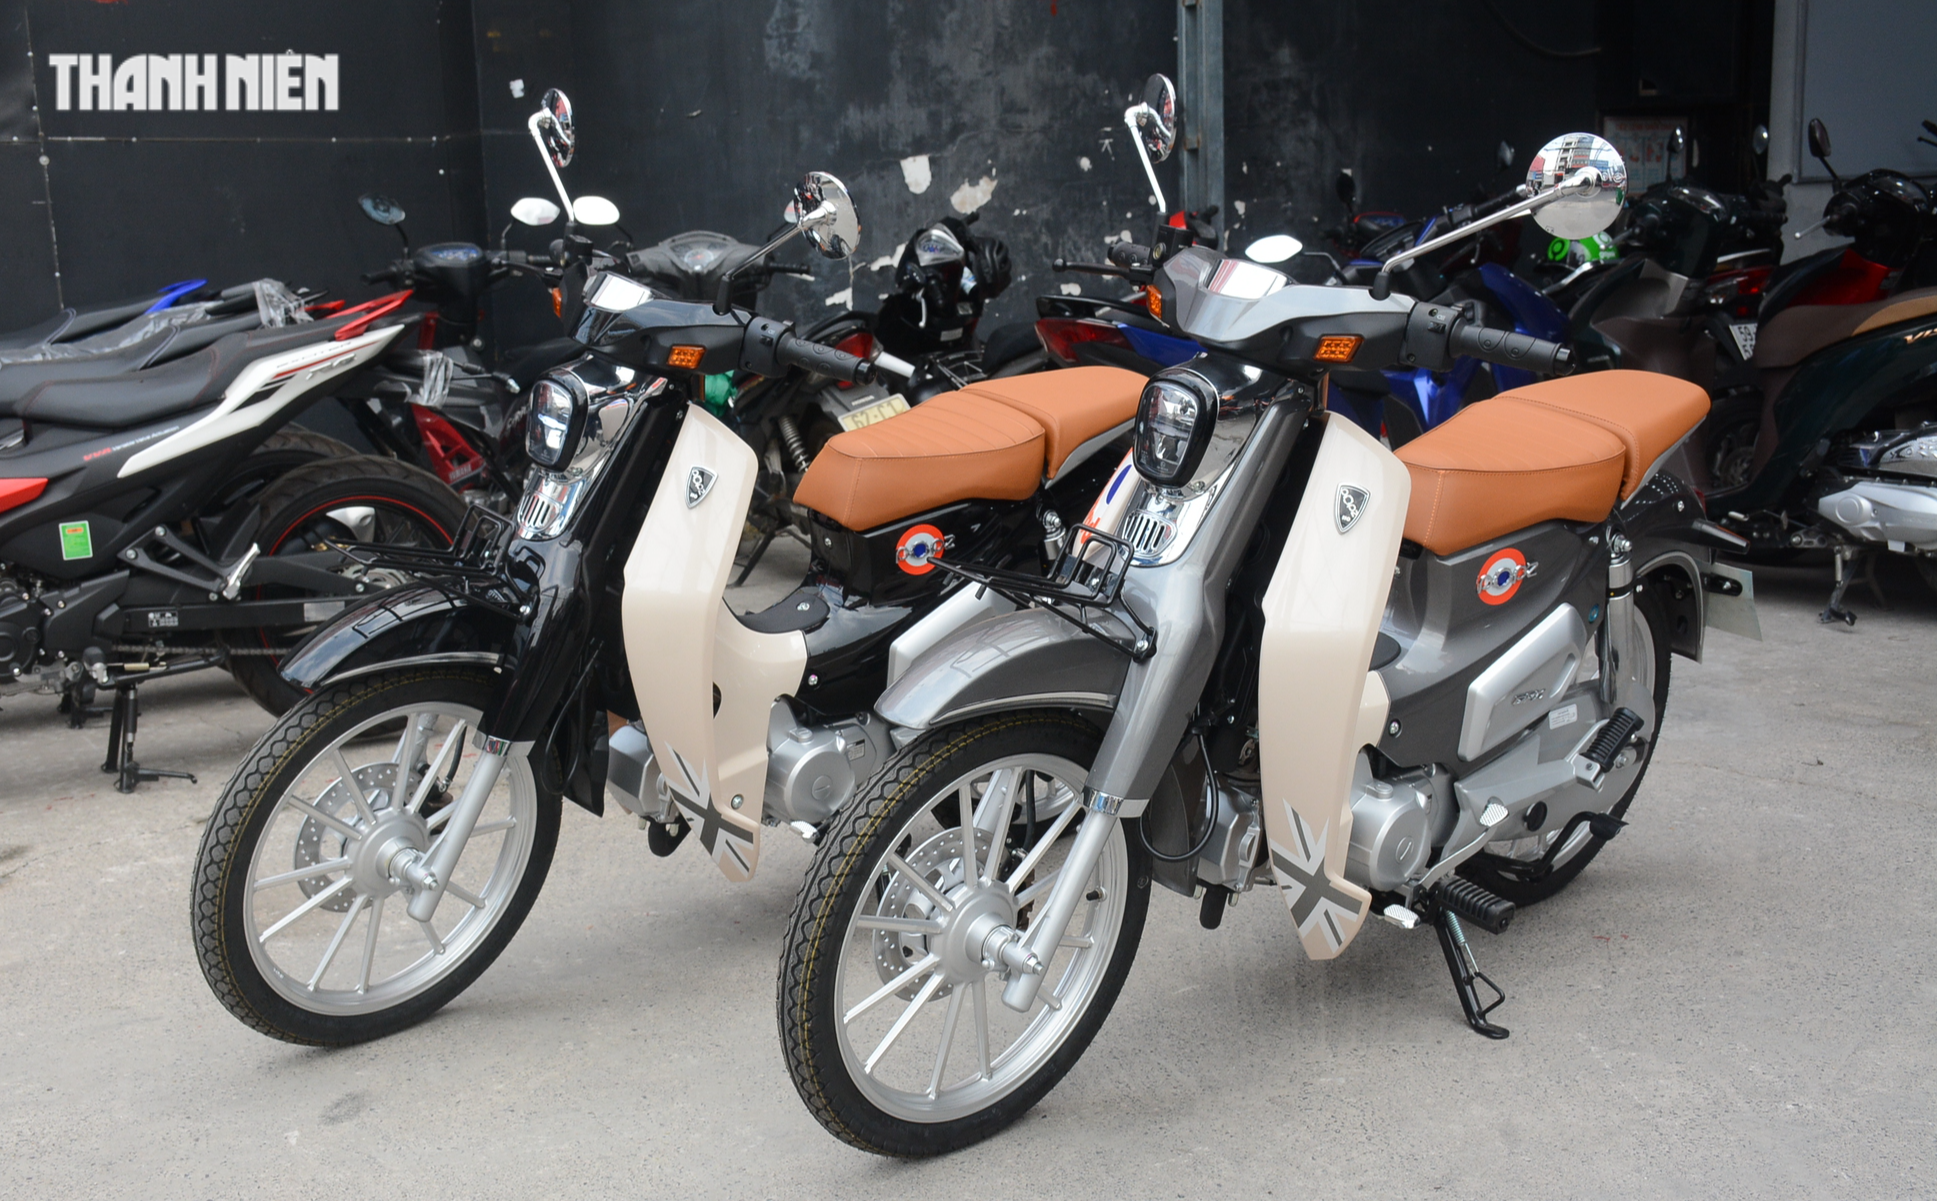 Hưởng ưu đãi kép, nhiều mẫu xe máy tại Việt Nam giảm giá hàng triệu đồng - Ảnh 3.